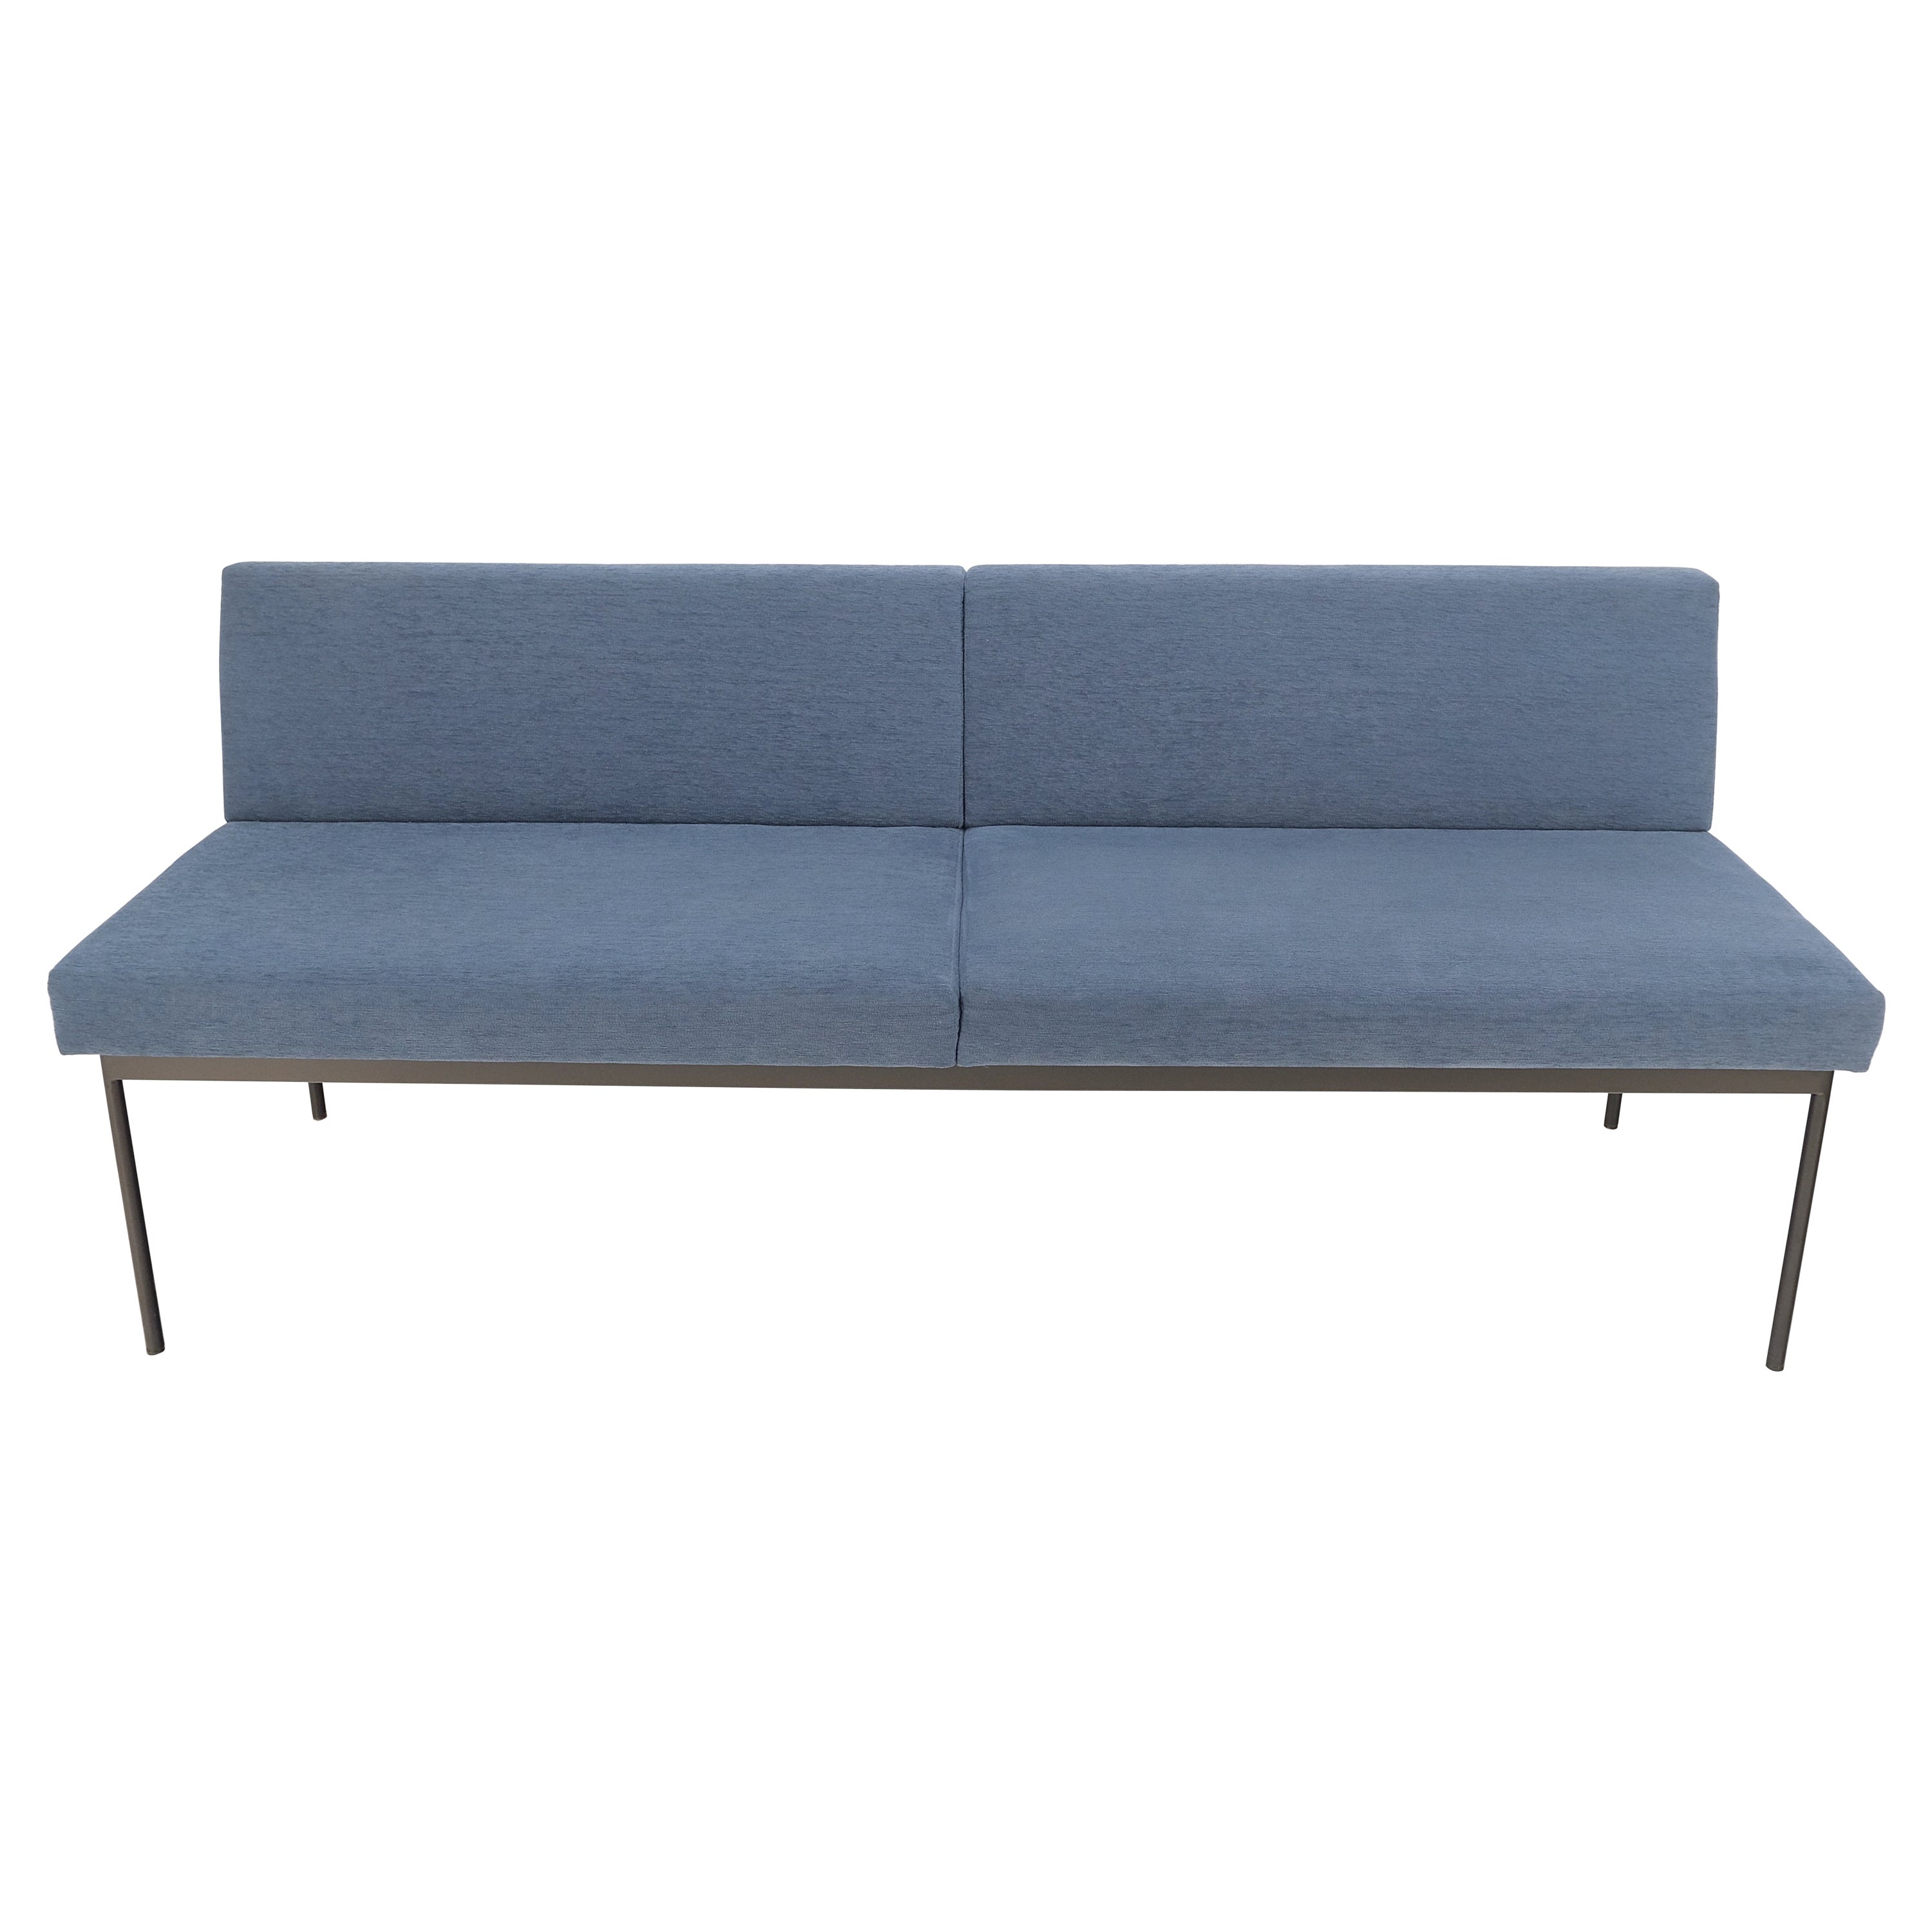 Geiger Tuxido Lounge Sofa Couch, Sitzbank, blaue Polsterung, schwarzer Rahmen, MINT!